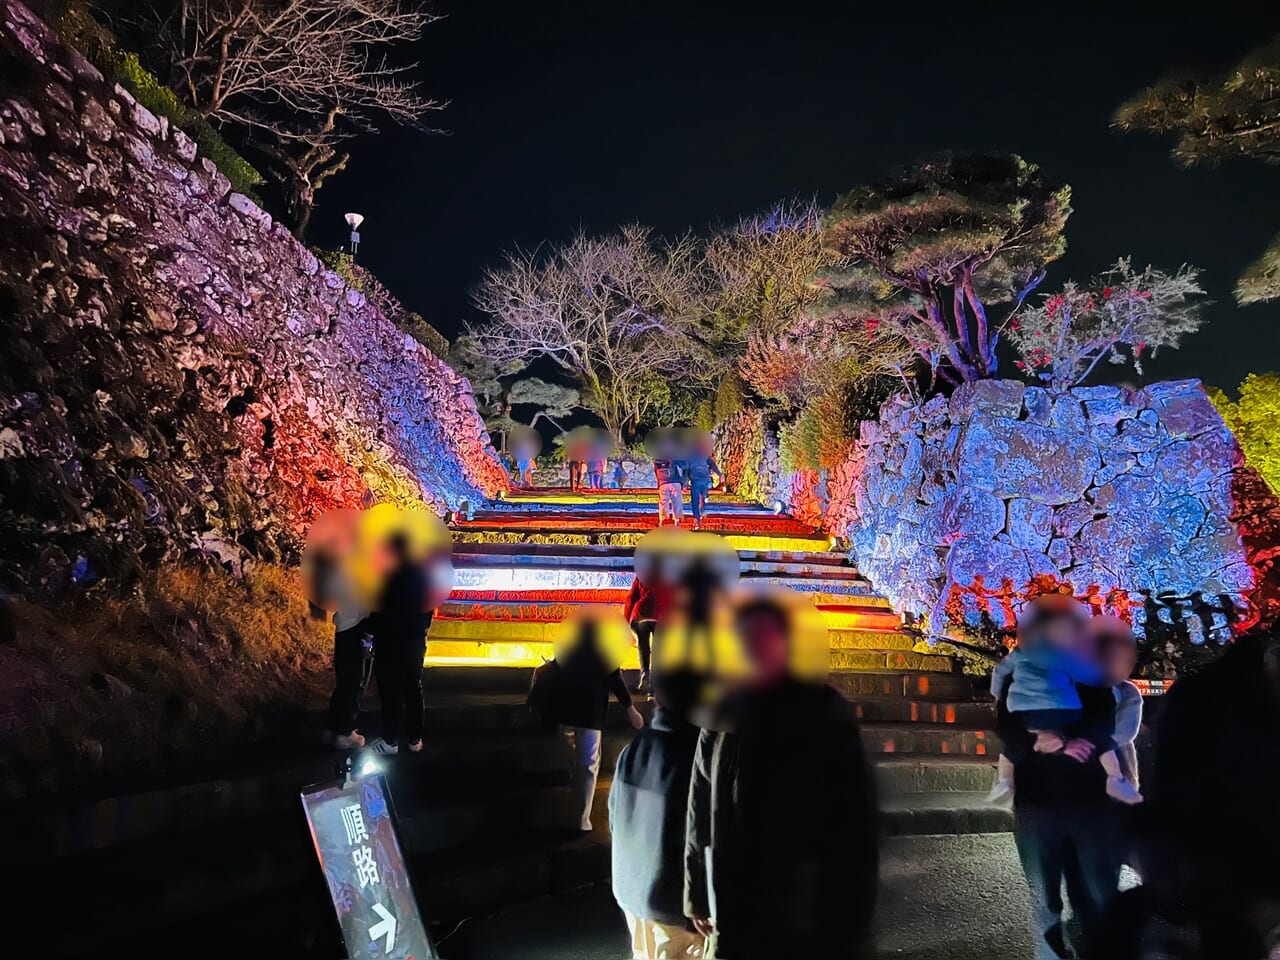 「NAKED夜まつり 高知城」の石階段（休日のようす）